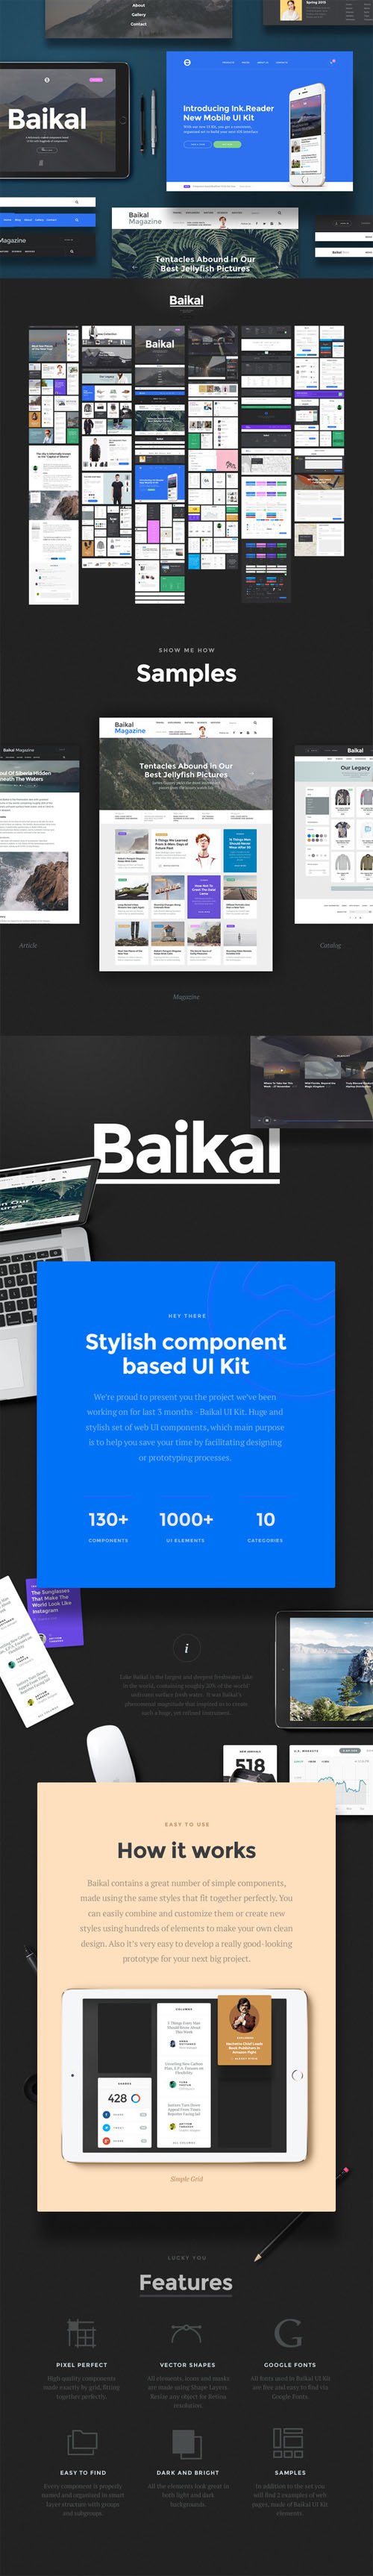 Baikal UI Kit - Creativemarket 130154